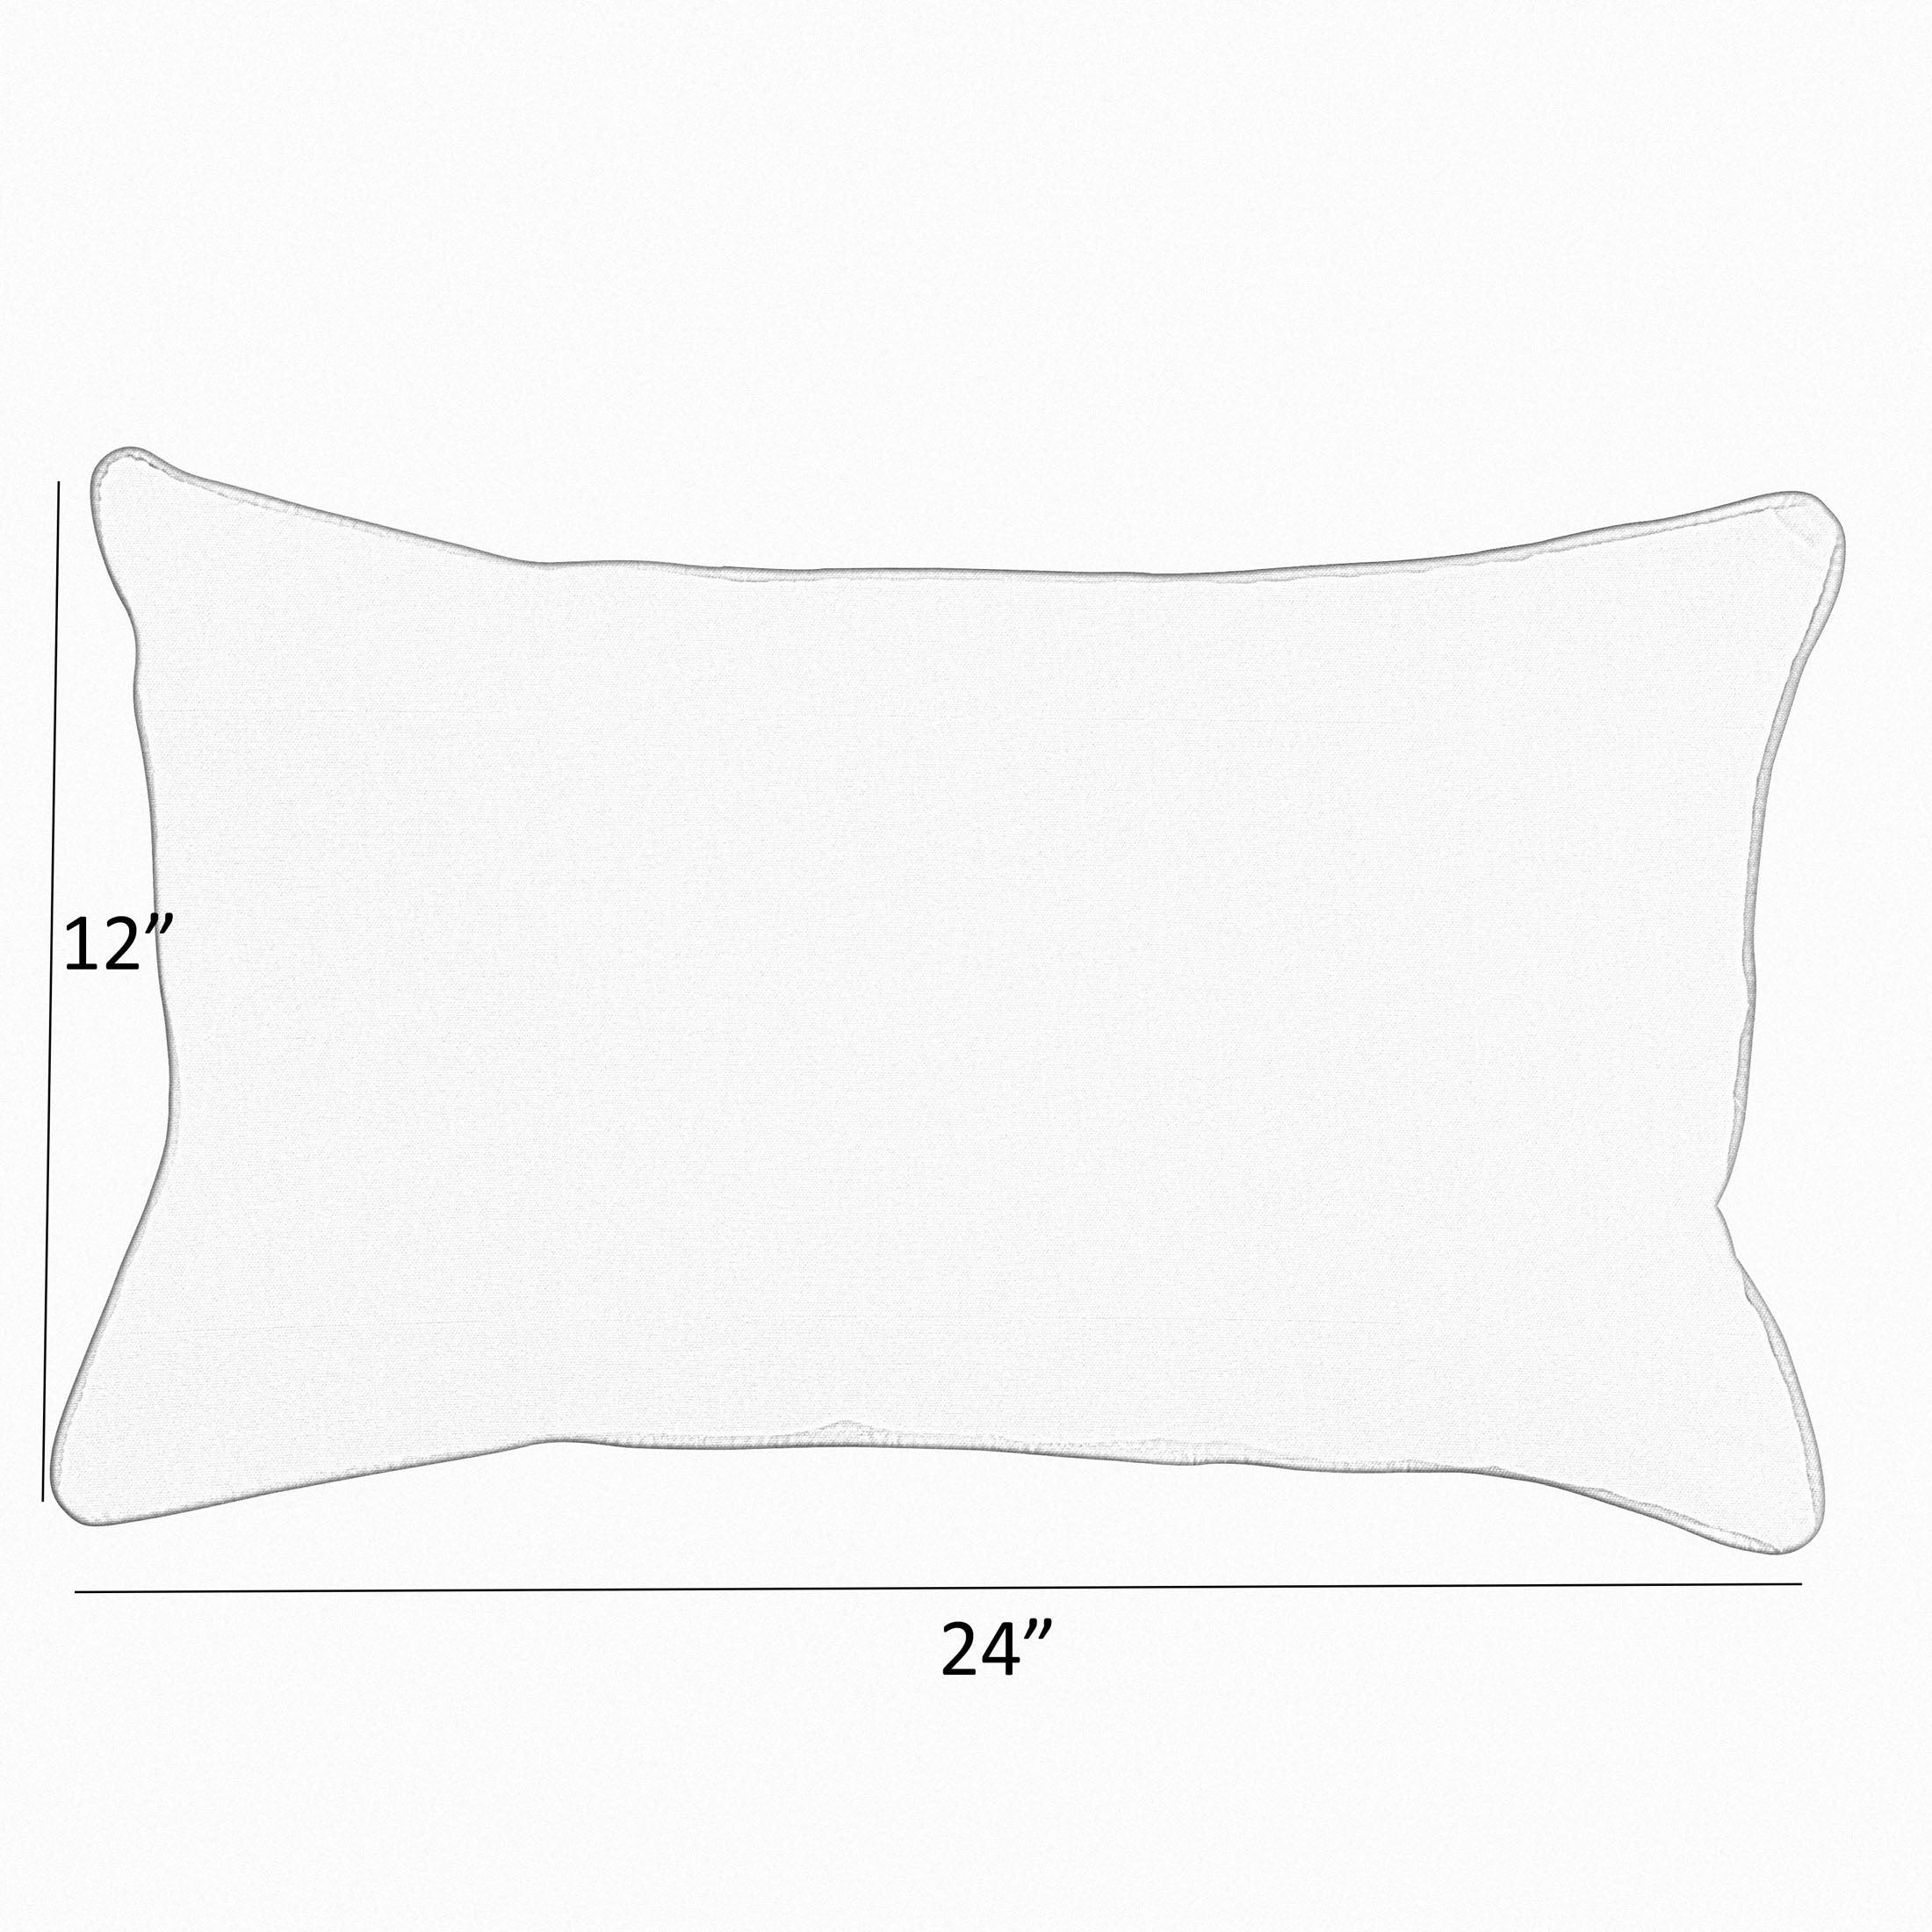 Sunbrella Peyton Granite Lumbar Corded Pillow (Set of 2) - Sorra Home